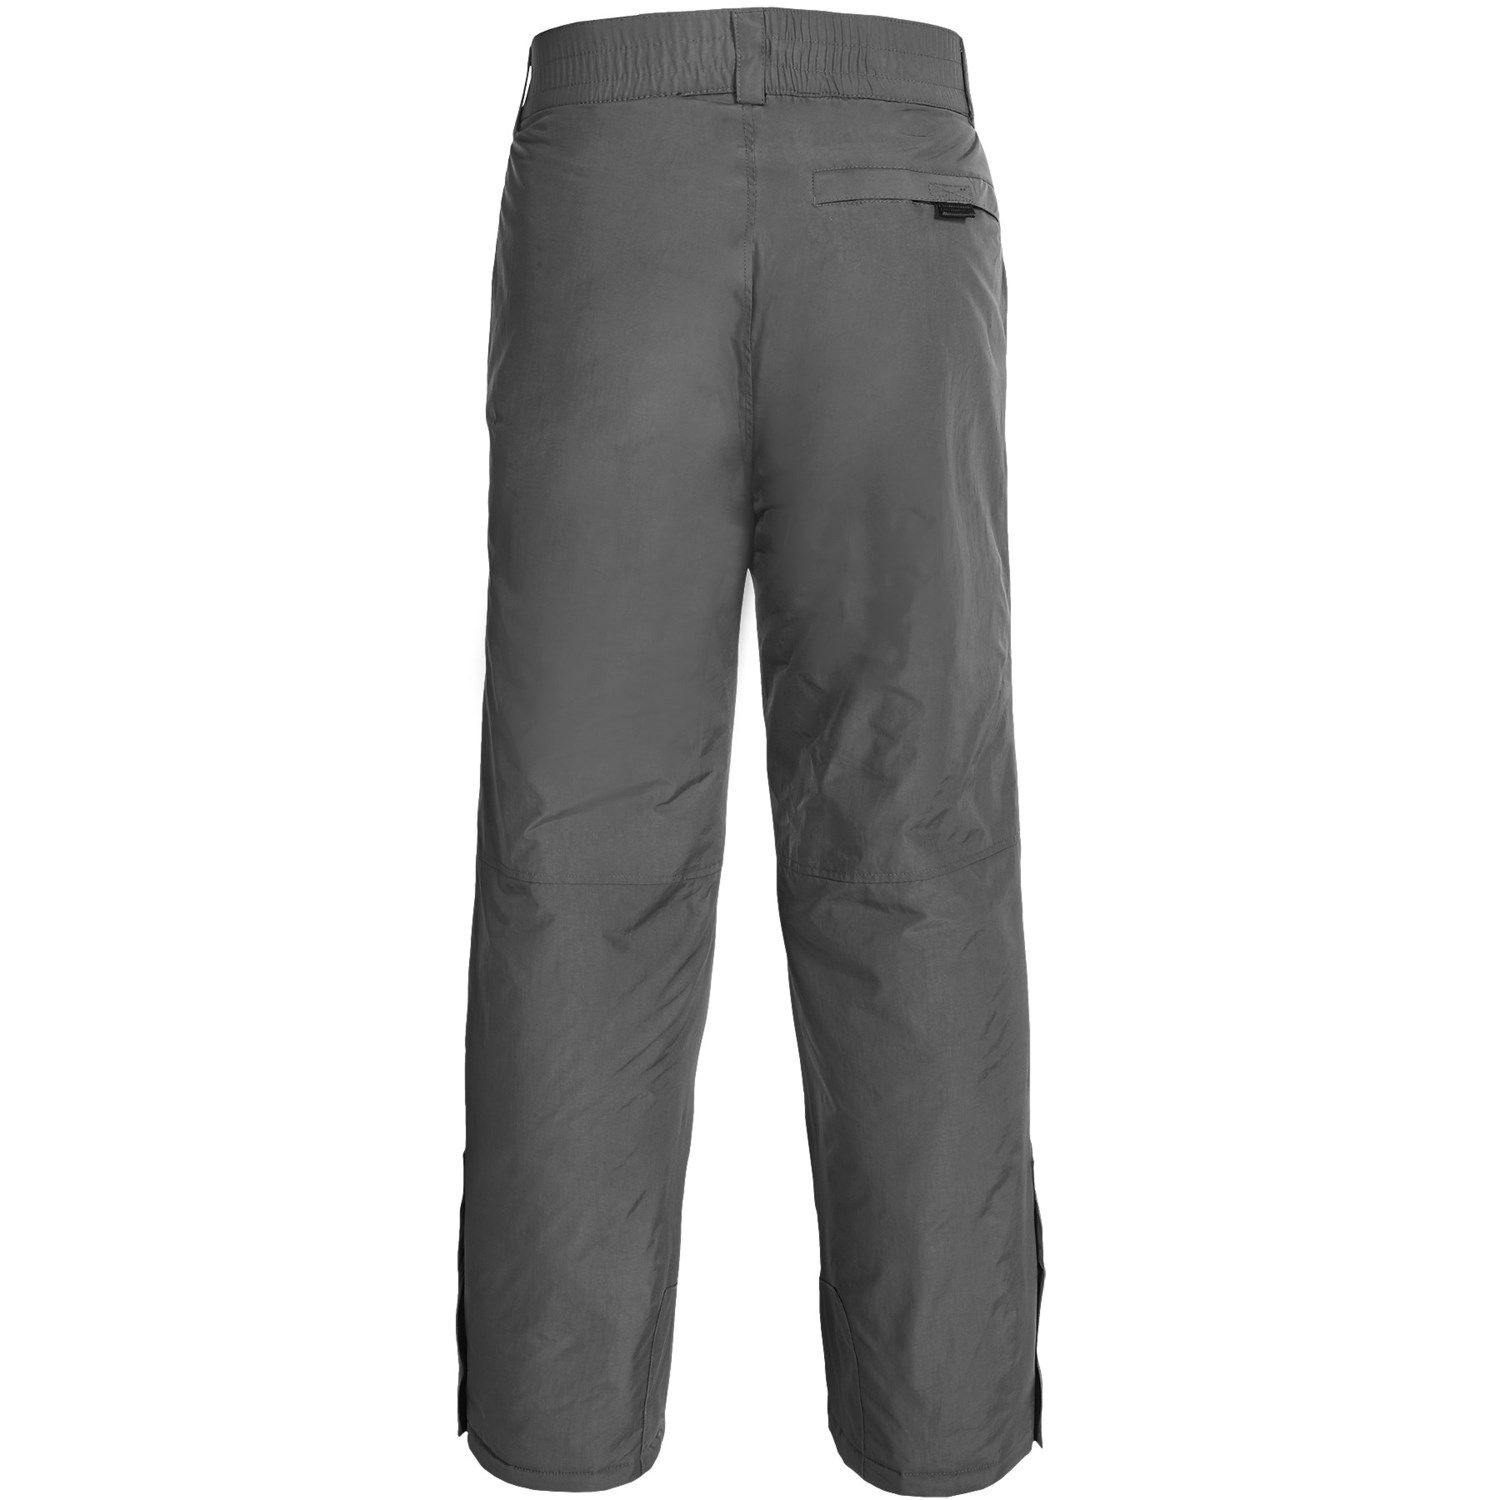 White Sierra Ski Pants (For Men) - Save 66%